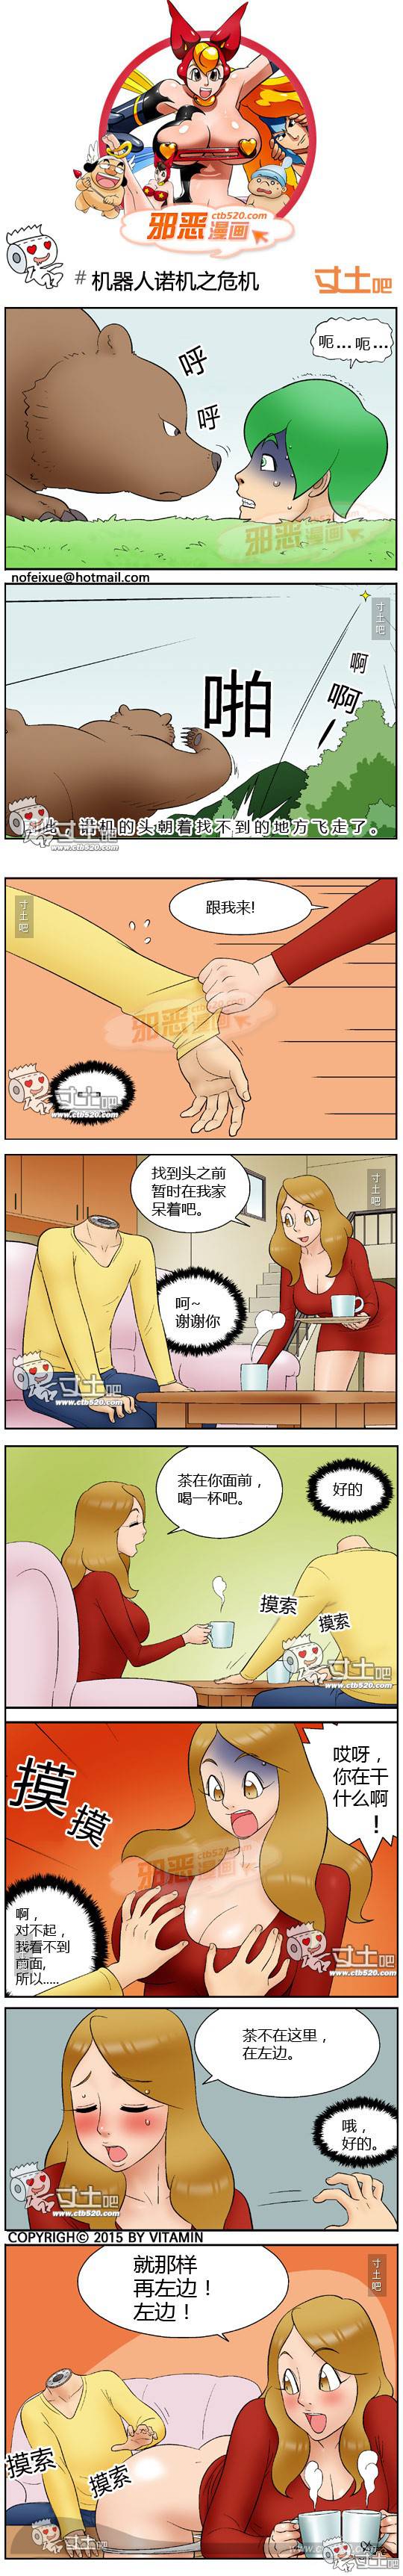 邪恶漫画爆笑囧图第308刊：机器人诺机之危机